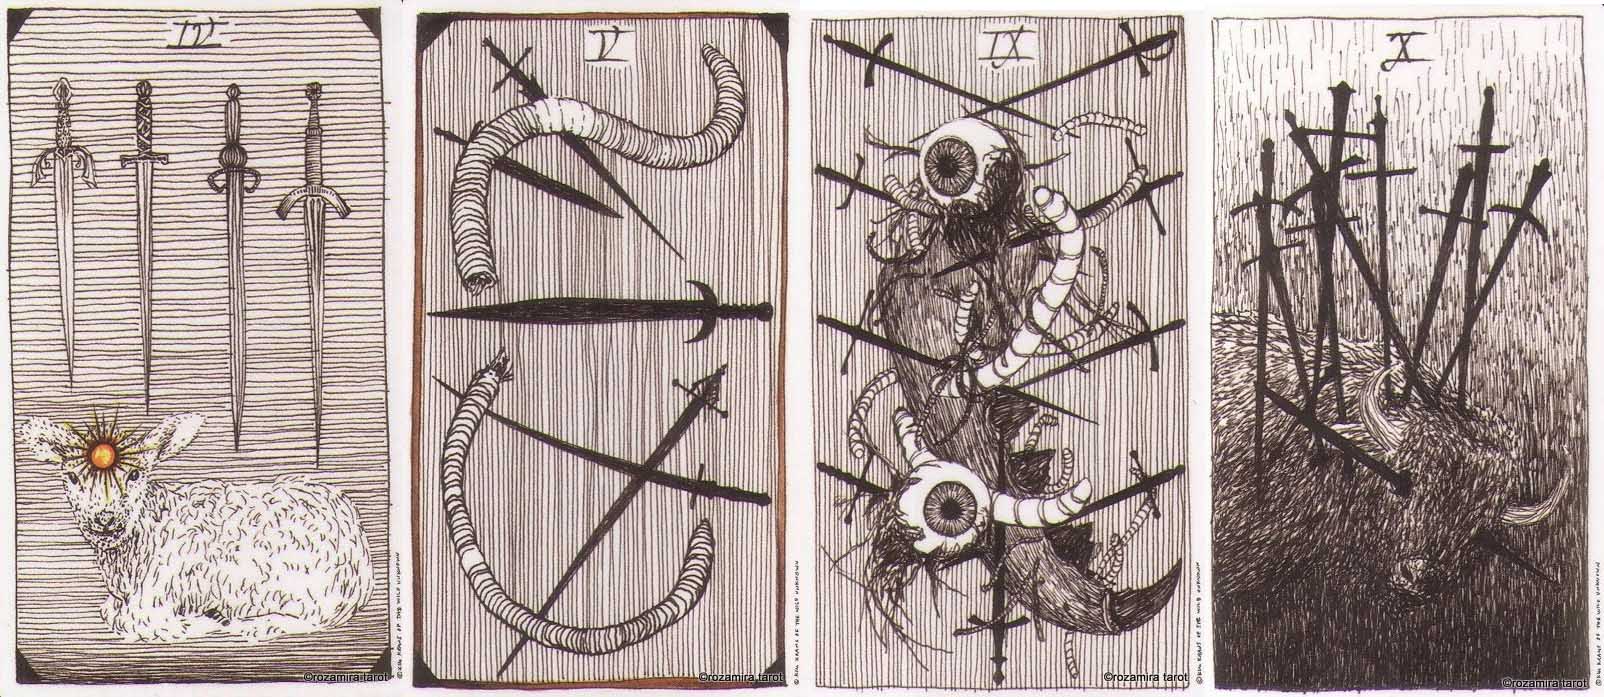 Дикое Неизвестное Таро (the wild unknown tarot) - обзор и описание колоды, особенности и уникальность, толкование значений карт